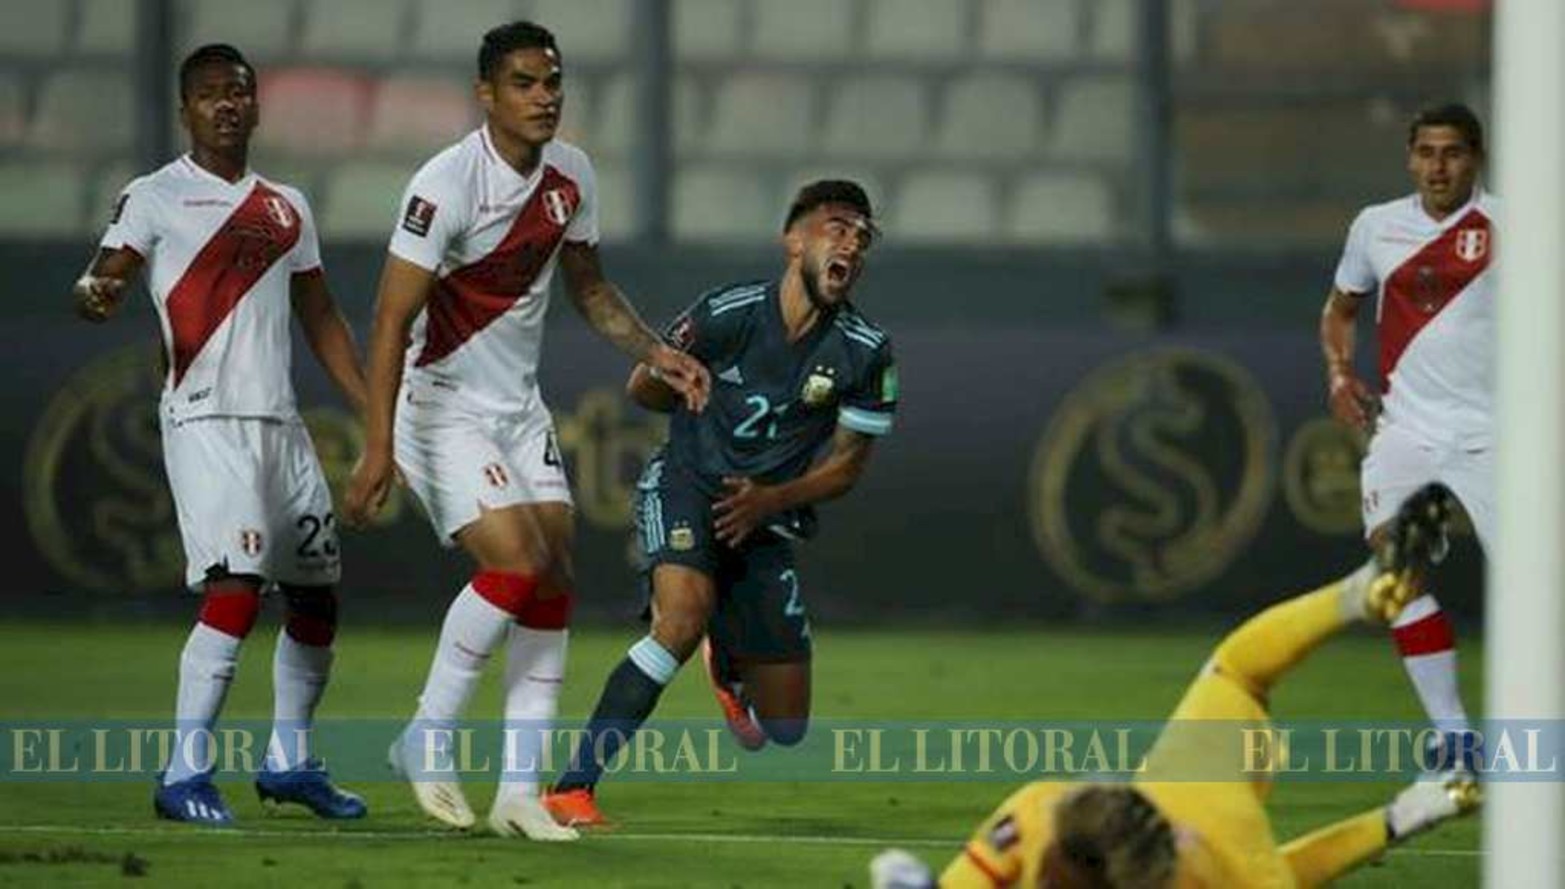 El fulminante disparo de Nicolás González. Argentino logró un contundente 2 a 0 en Perú. Logró 10 puntos de los 12 en juego.